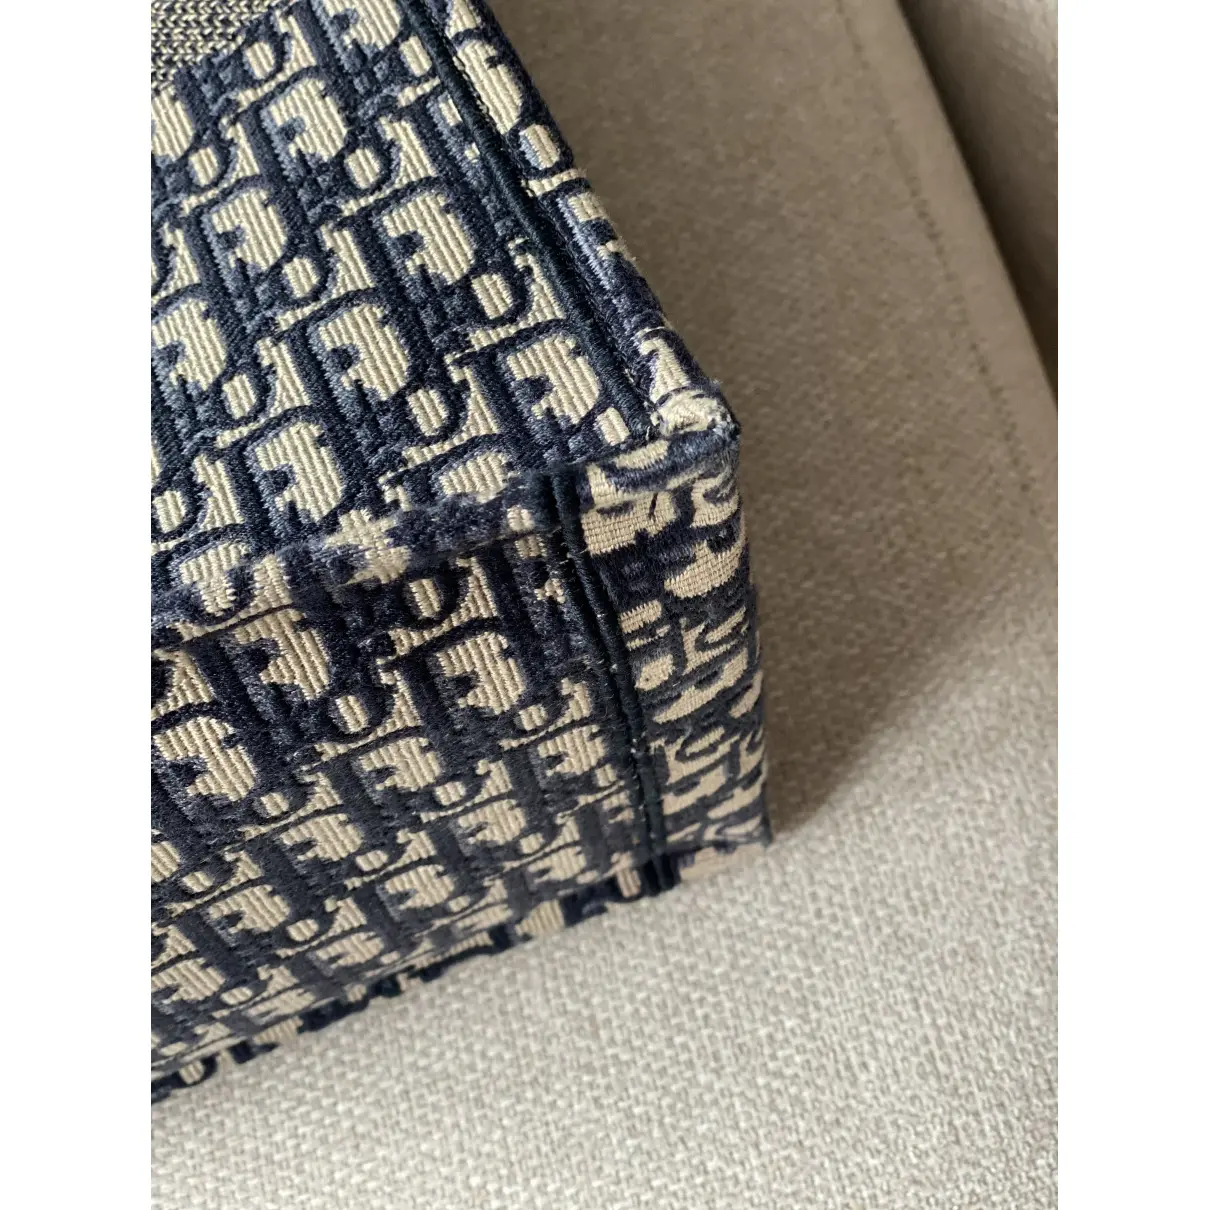 Book Tote cloth handbag Dior